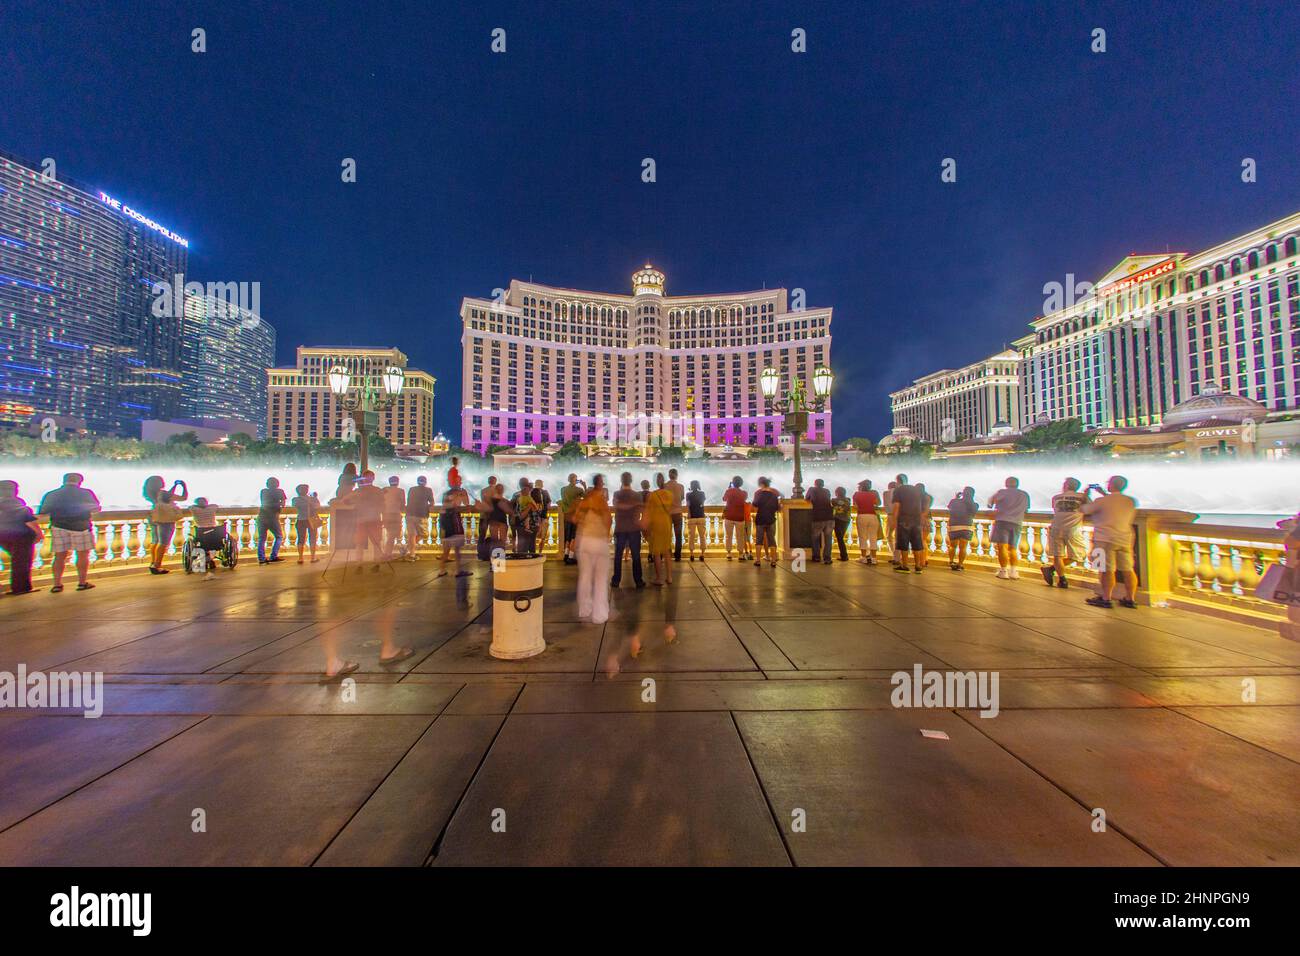 Famoso Bellagio Hotel con giochi d'acqua a Las Vegas Foto Stock